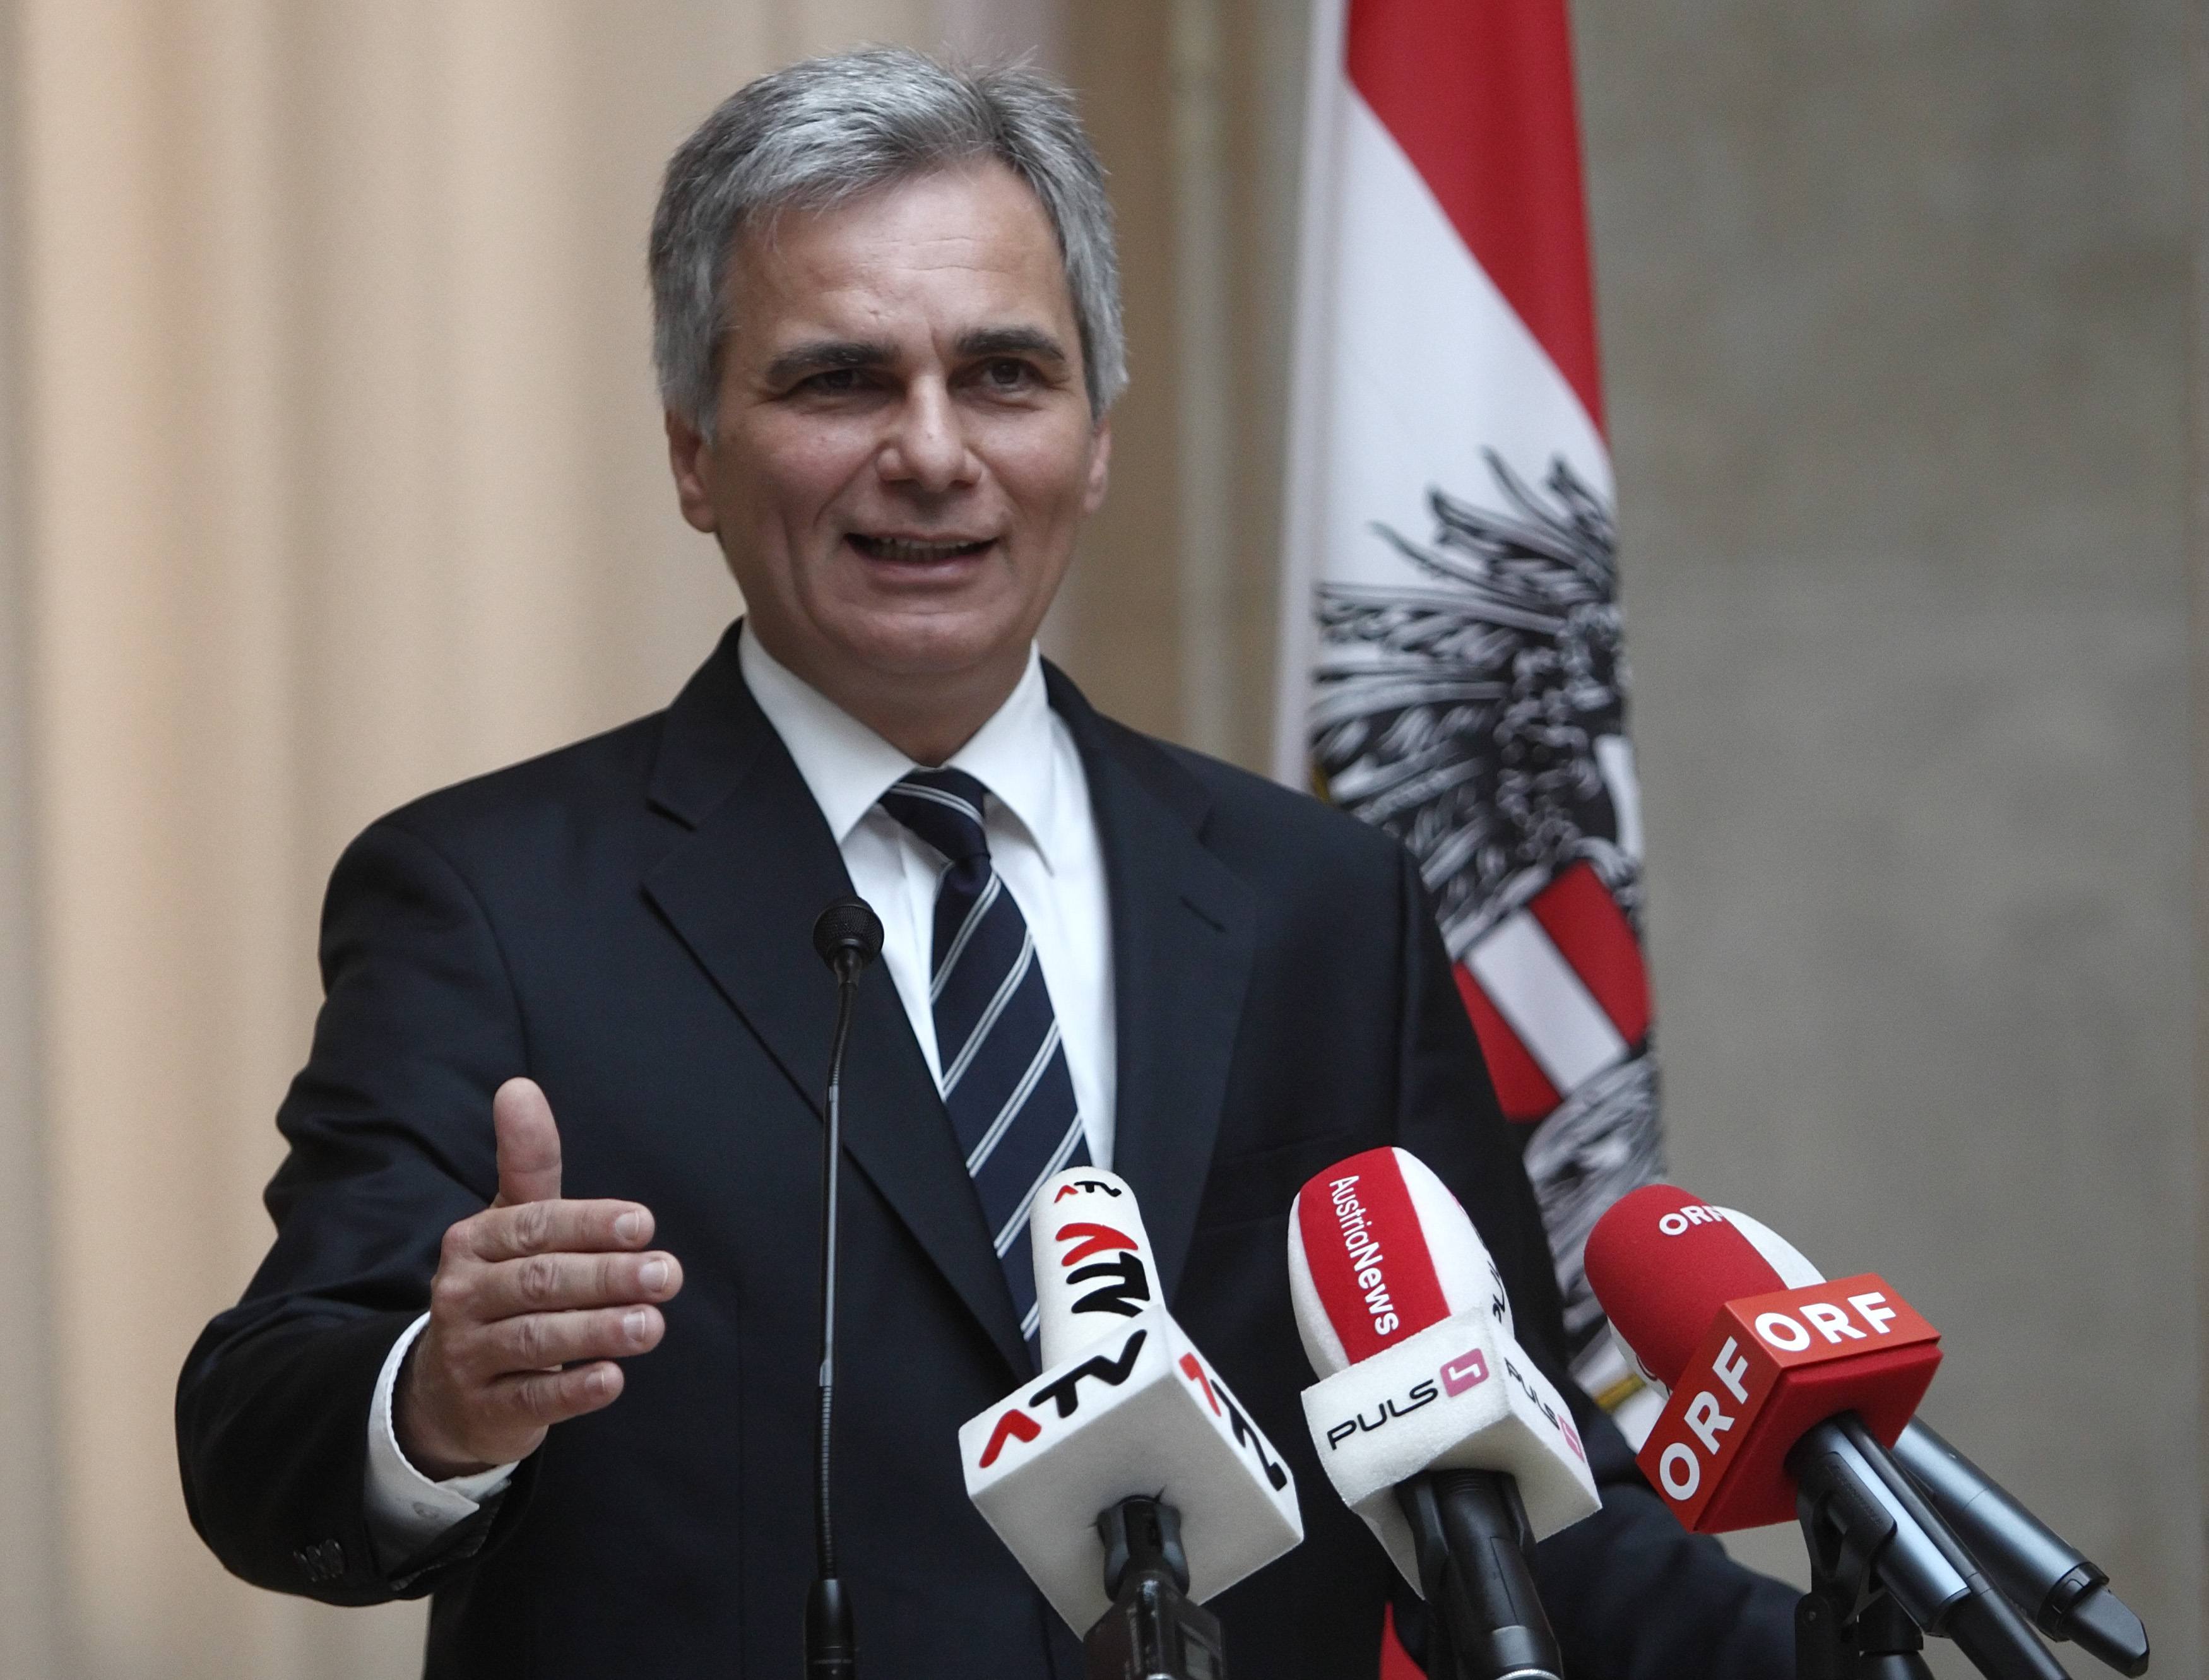 Ο Αυστριακός καγκελάριος θα είναι ο διάδοχος του Γιούνκερ;